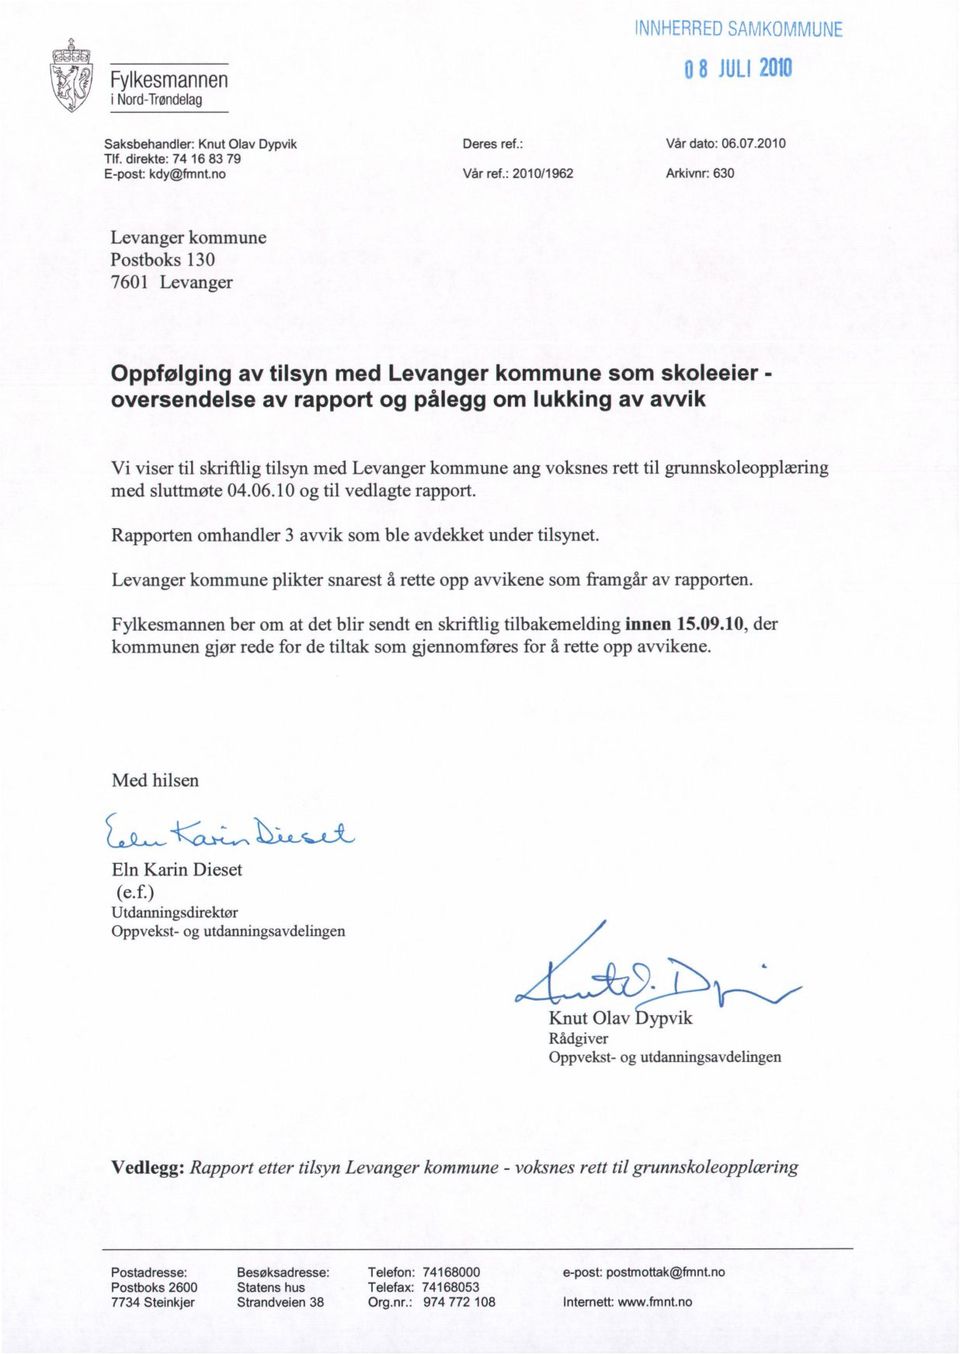 skriftlig tilsyn med Levanger kommune ang voksnes rett til grunnskoleopplæring med sluttmøte 04.06.10 og til vedlagte rapport. Rapporten omhandler 3 avvik som ble avdekket under tilsynet.